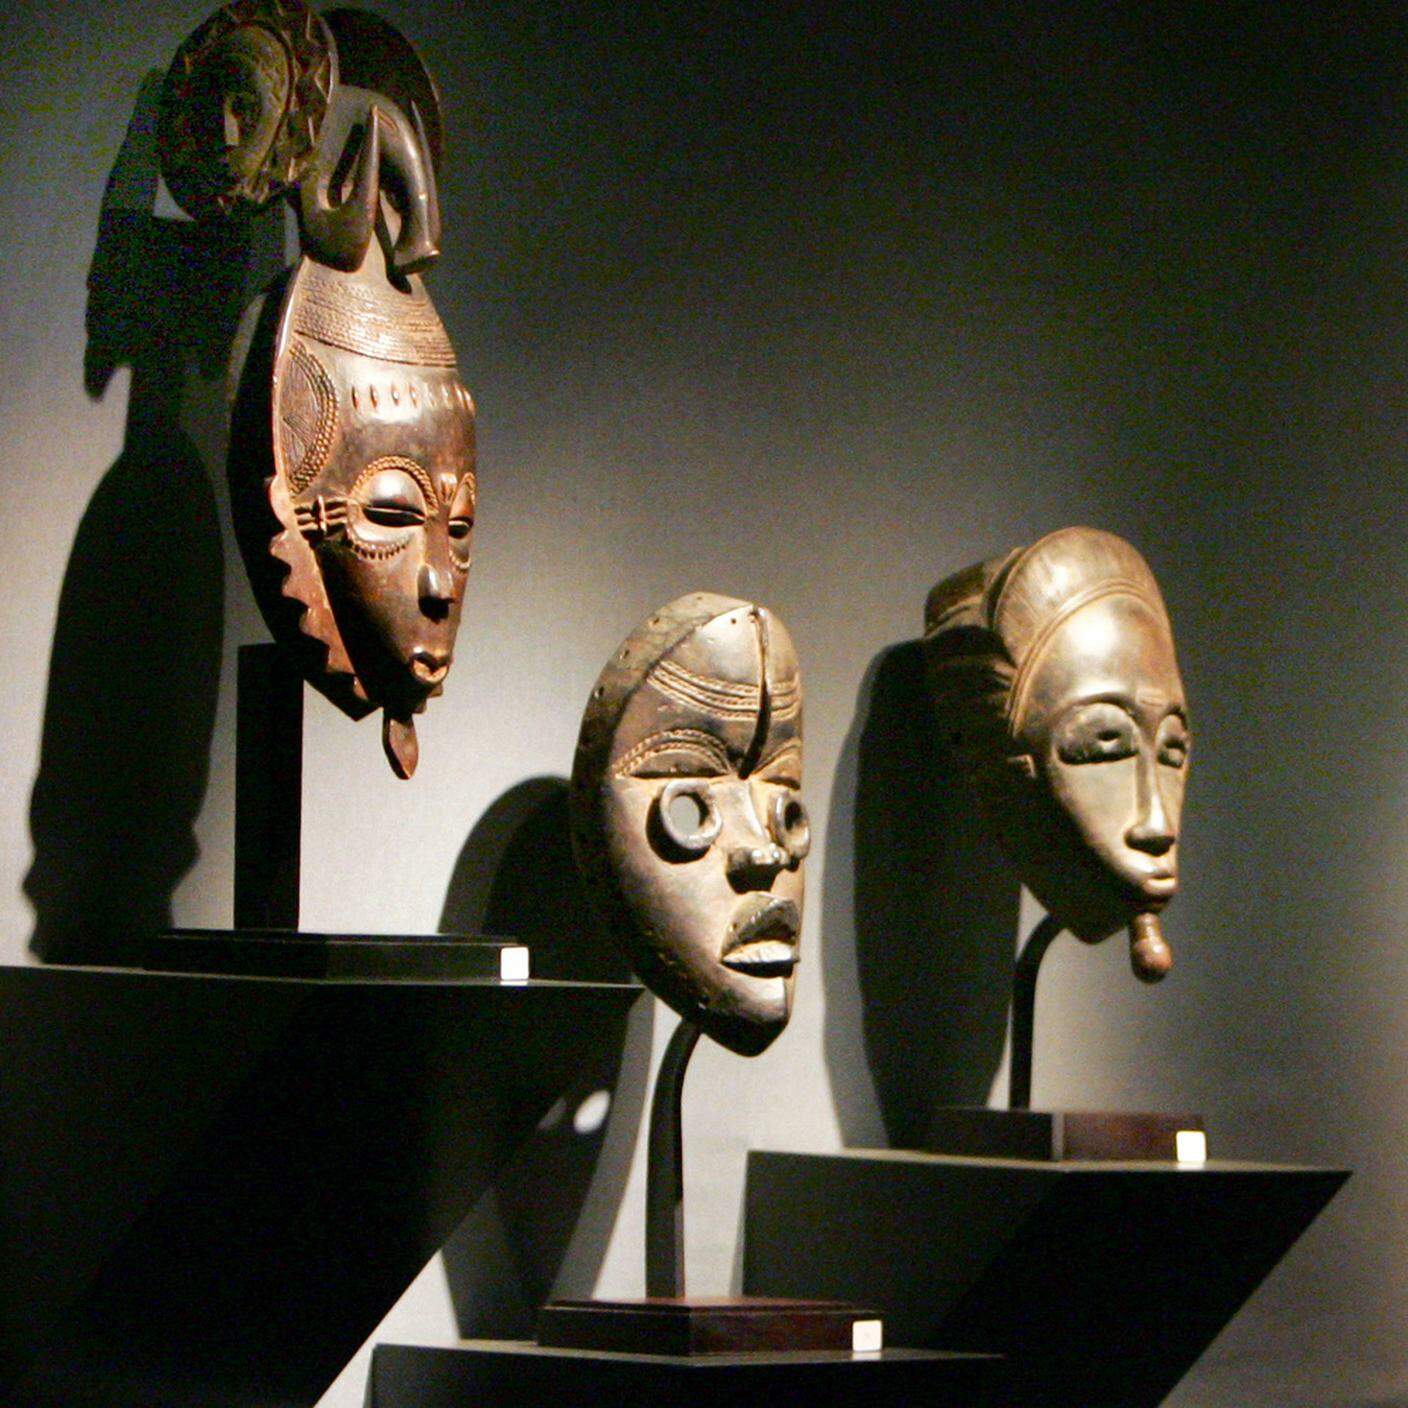 Un visitatore dà un'occhiata ad alcune delle maschere africane che fanno parte di una collezione appartenente ad alcuni collezionisti Francesi, Parigi.